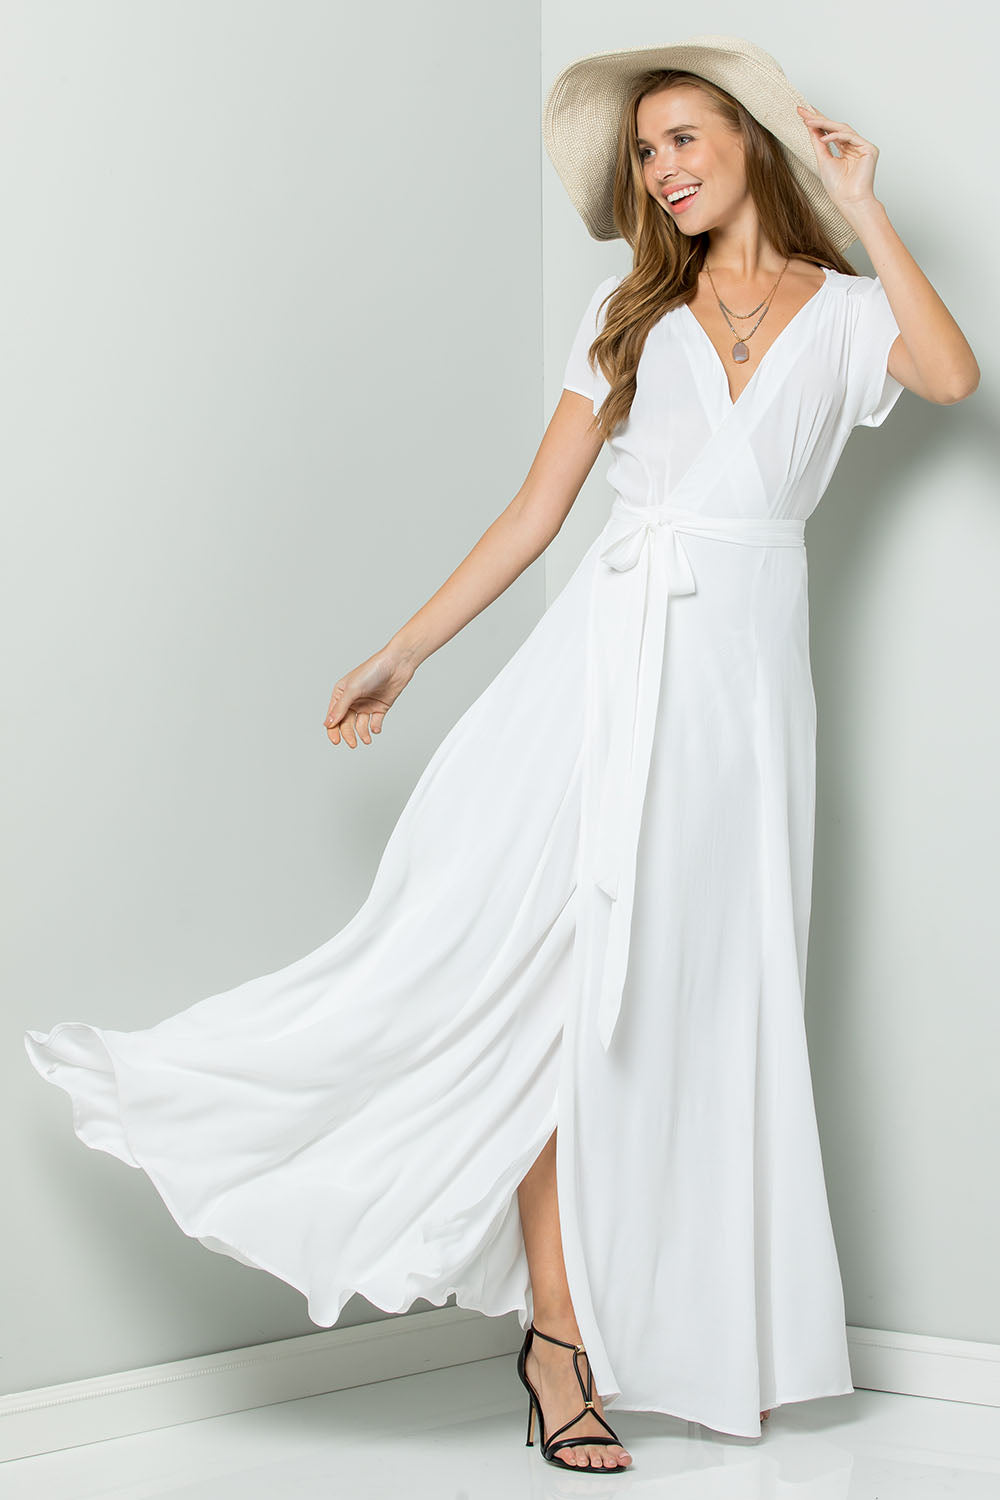 white flowy dress casual